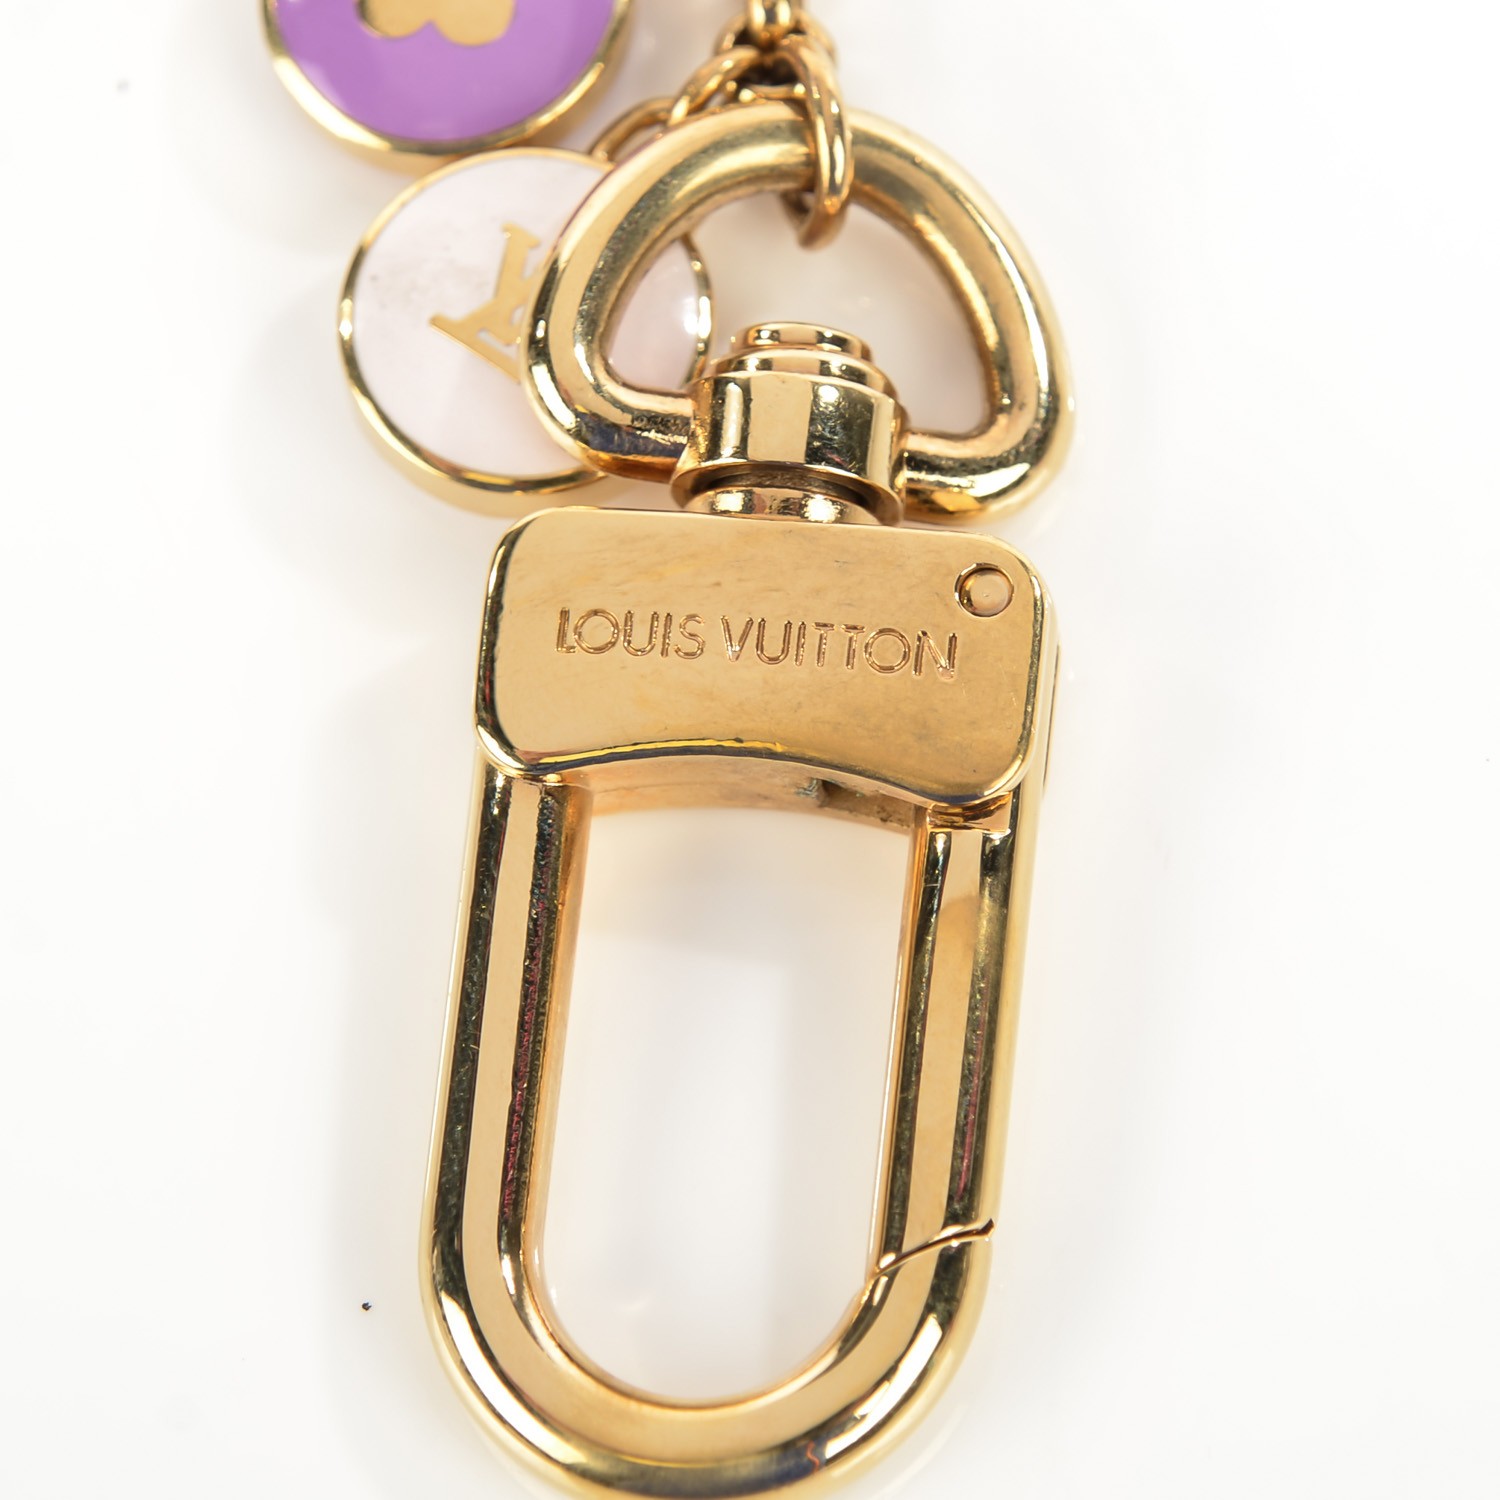 LOUIS VUITTON Pastilles Key Chain Bag Charm Multicolor 112524